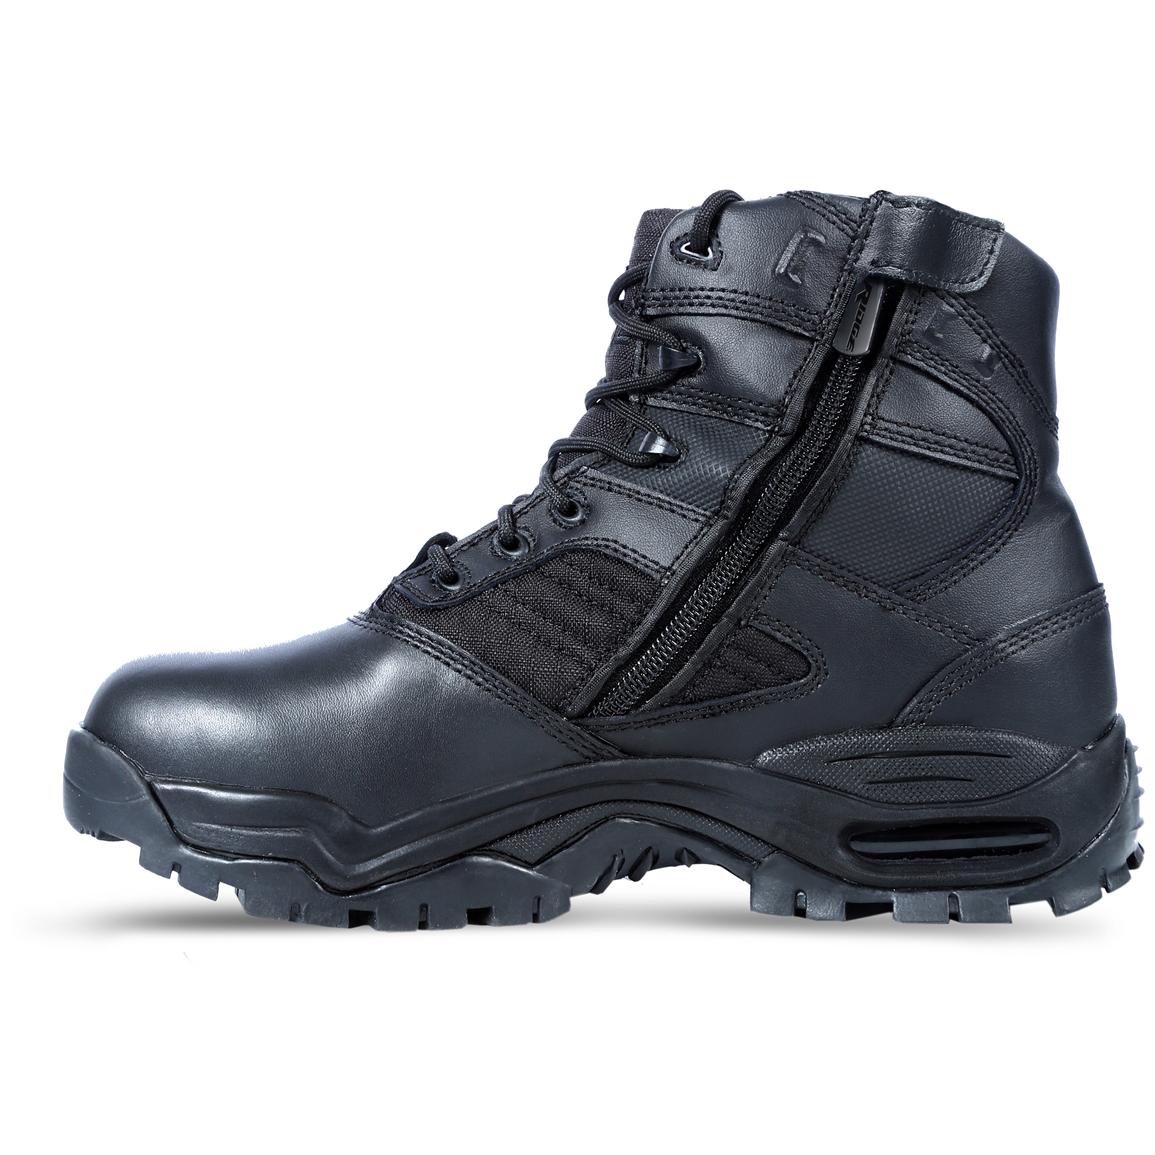 Men's Ridge® 6" Ultimate Mid Waterproof Tactical Boots 300272, Combat & Tactical Boots at